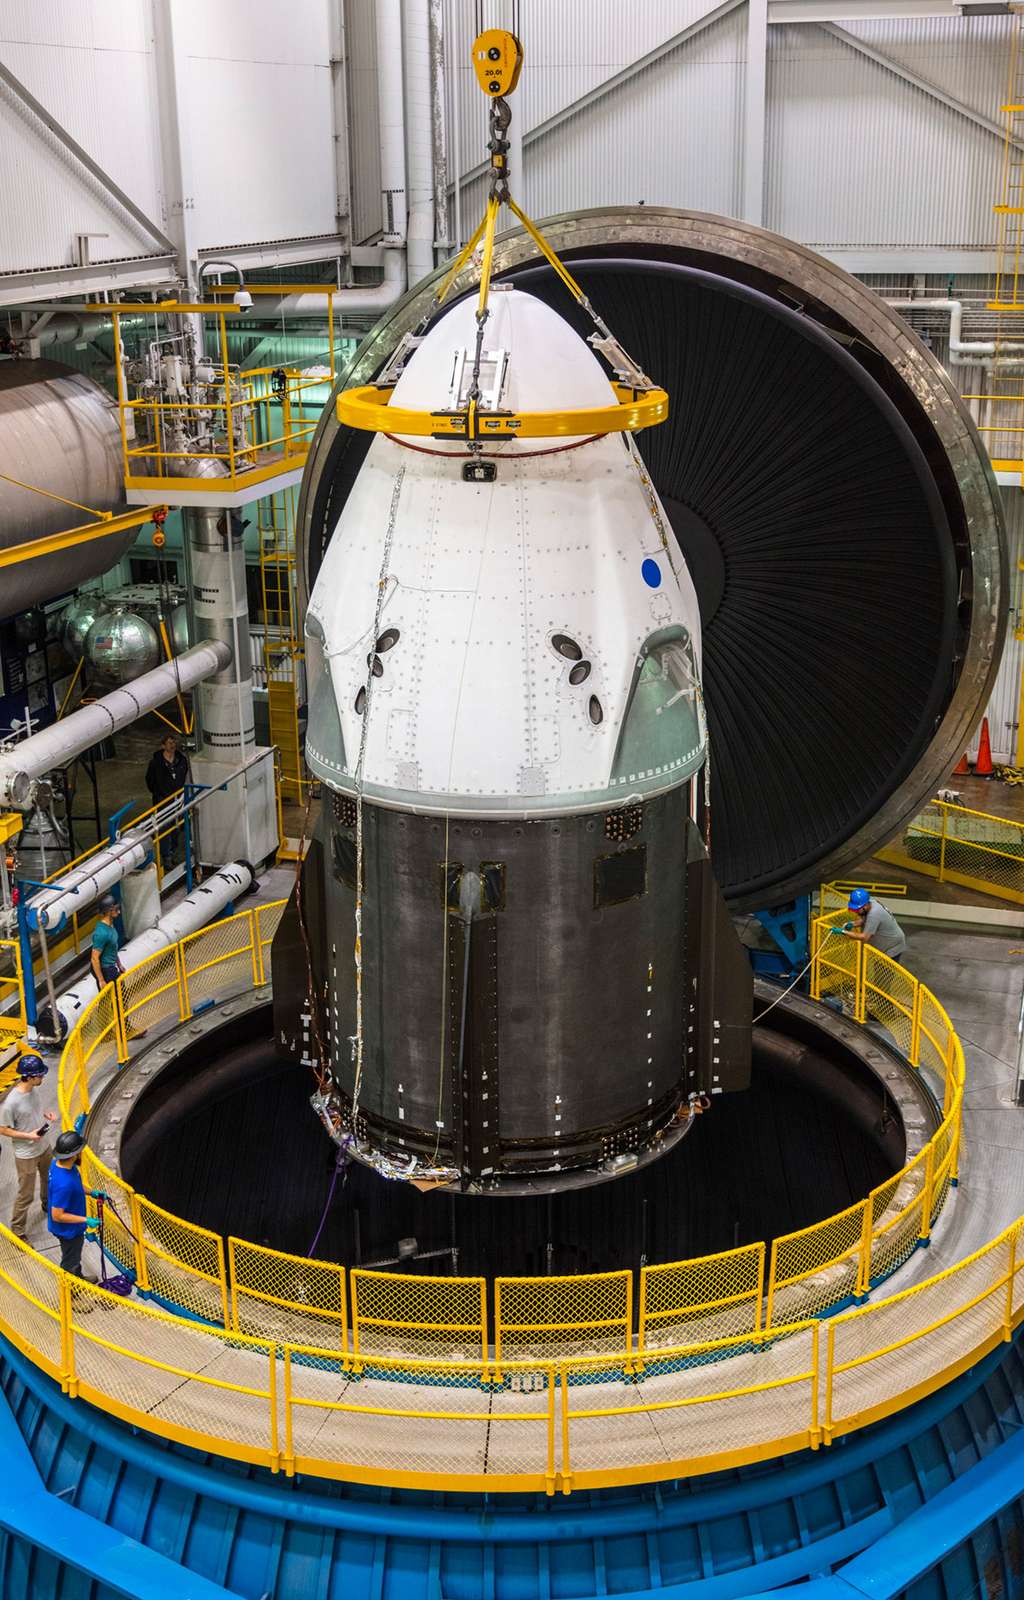 Le Crew Dragon de SpaceX installé dans la chambre à vide de la Nasa pour être testé au vide spatial et exposé aux températures que le véhicule connaîtra lors de son séjour dans l'espace et de son retour sur Terre. © Nasa